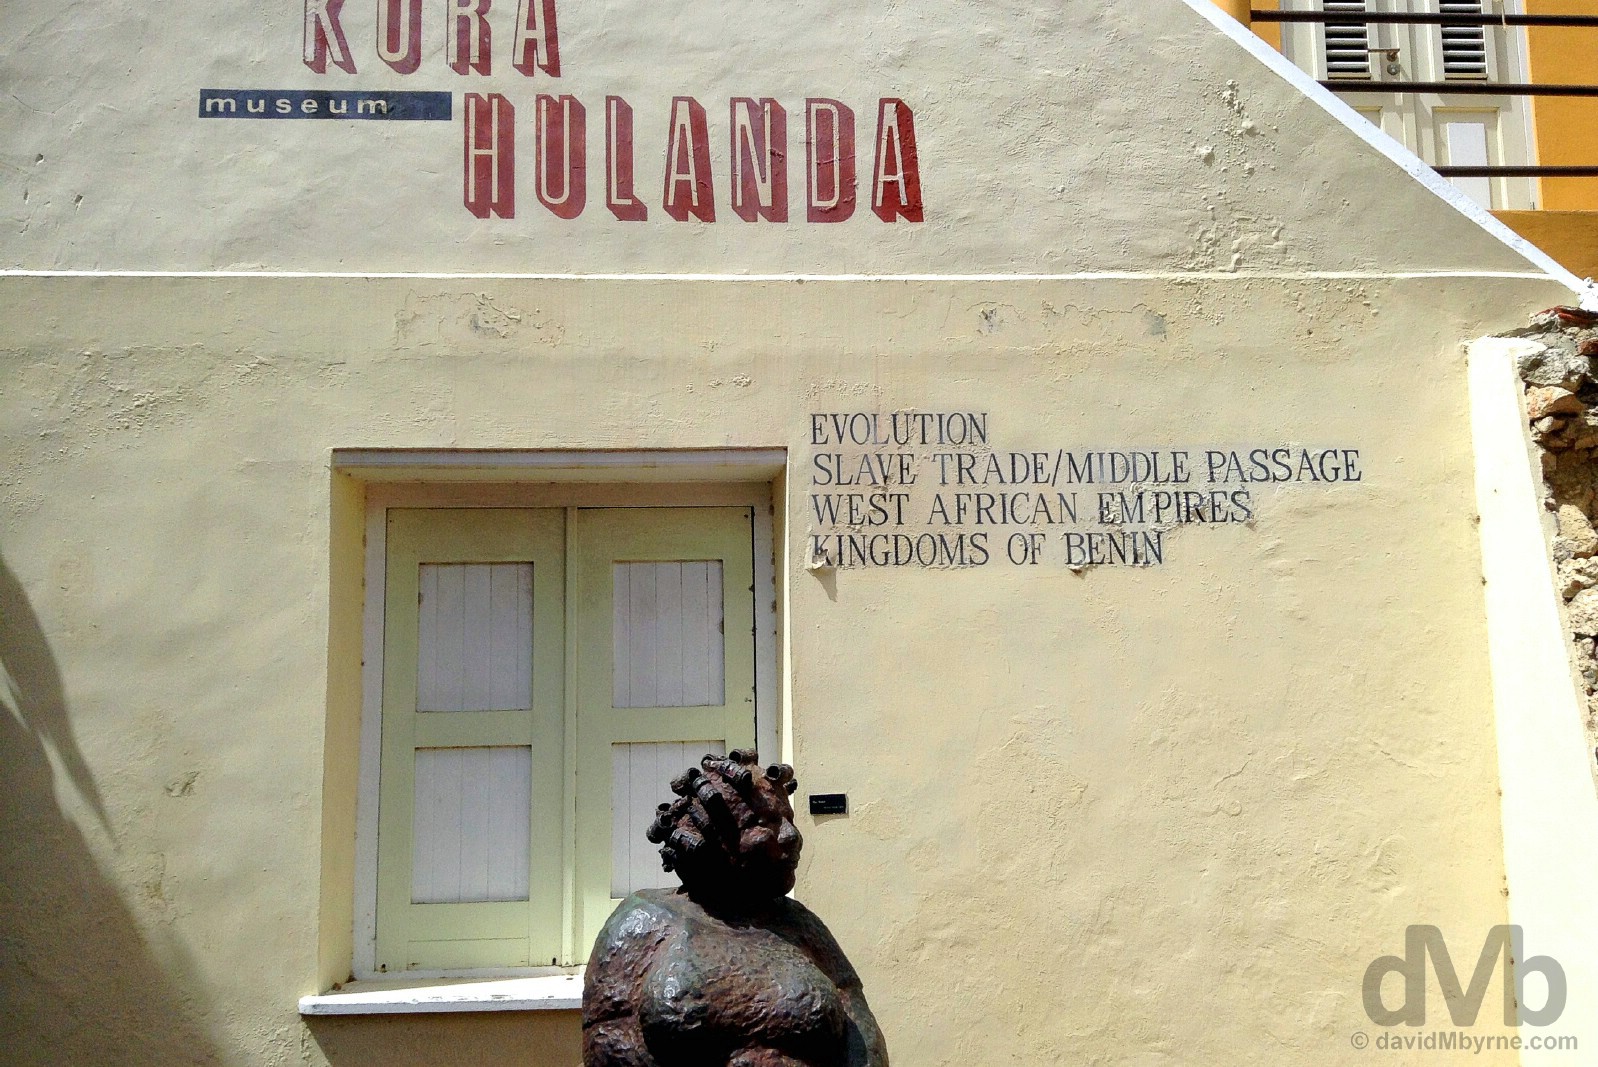 Museum Kura Hulanda, Otrobanda, Willemstad, Curacao, Lesser Antilles. June 20, 2015.